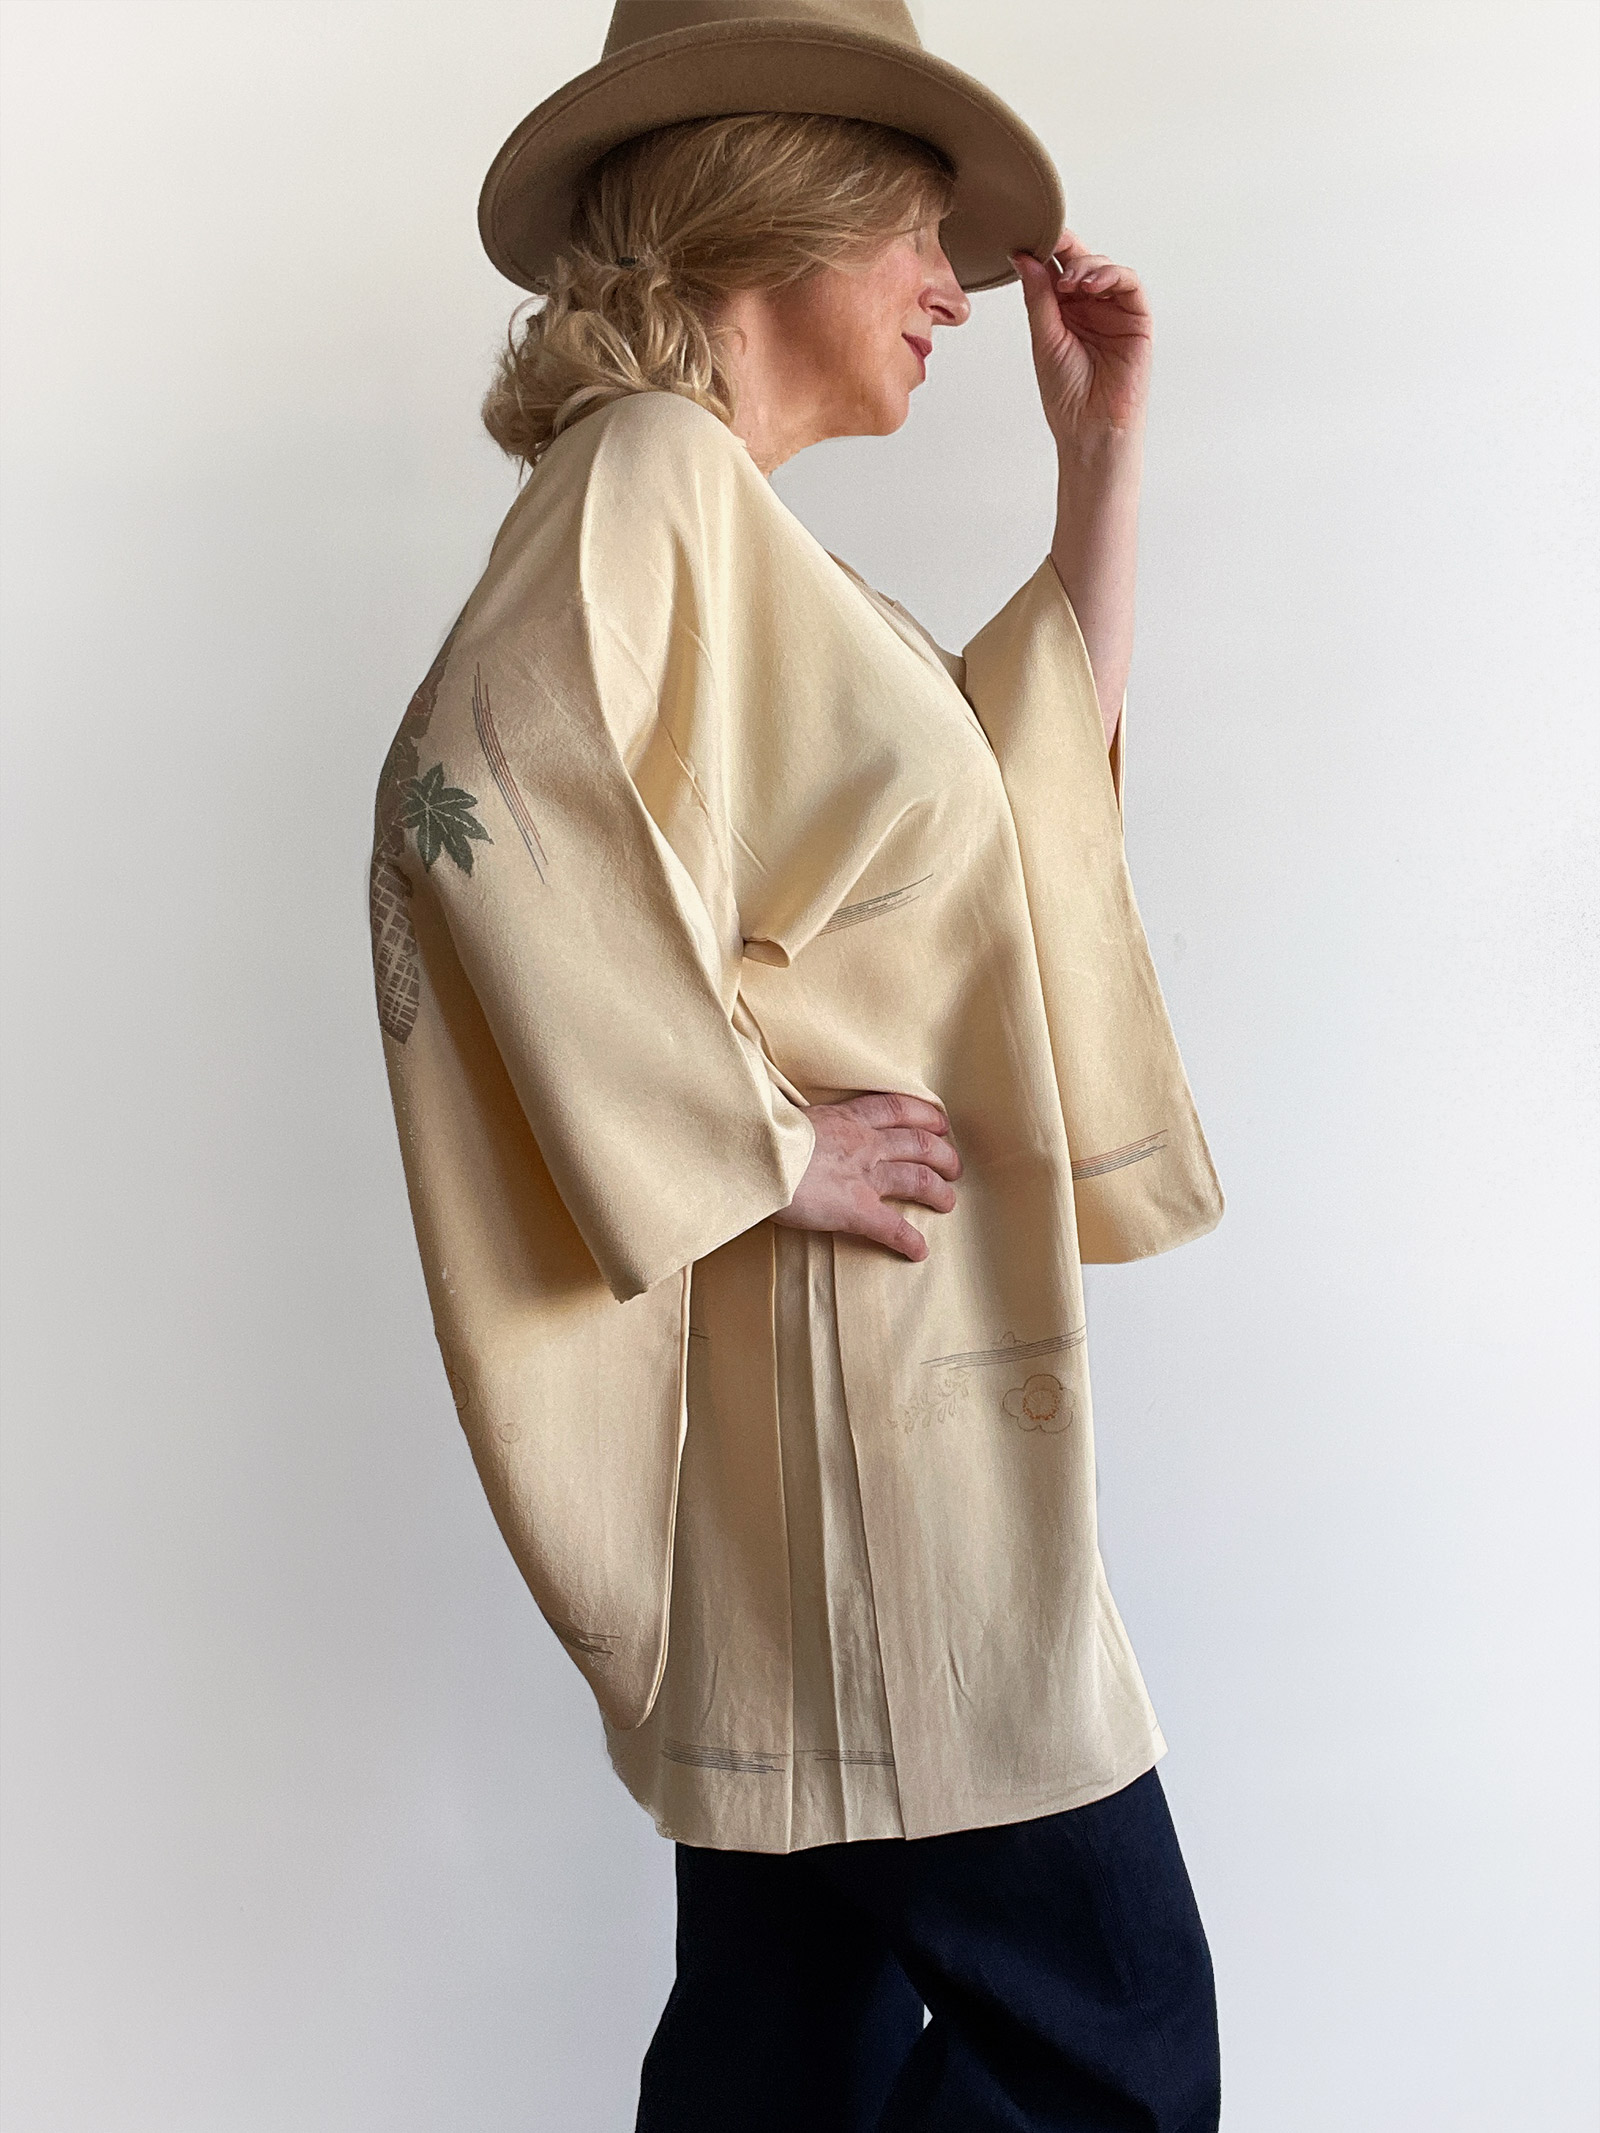 Yugana – elegant silk Haori (Kimono jacket) in a creamy vanilla color